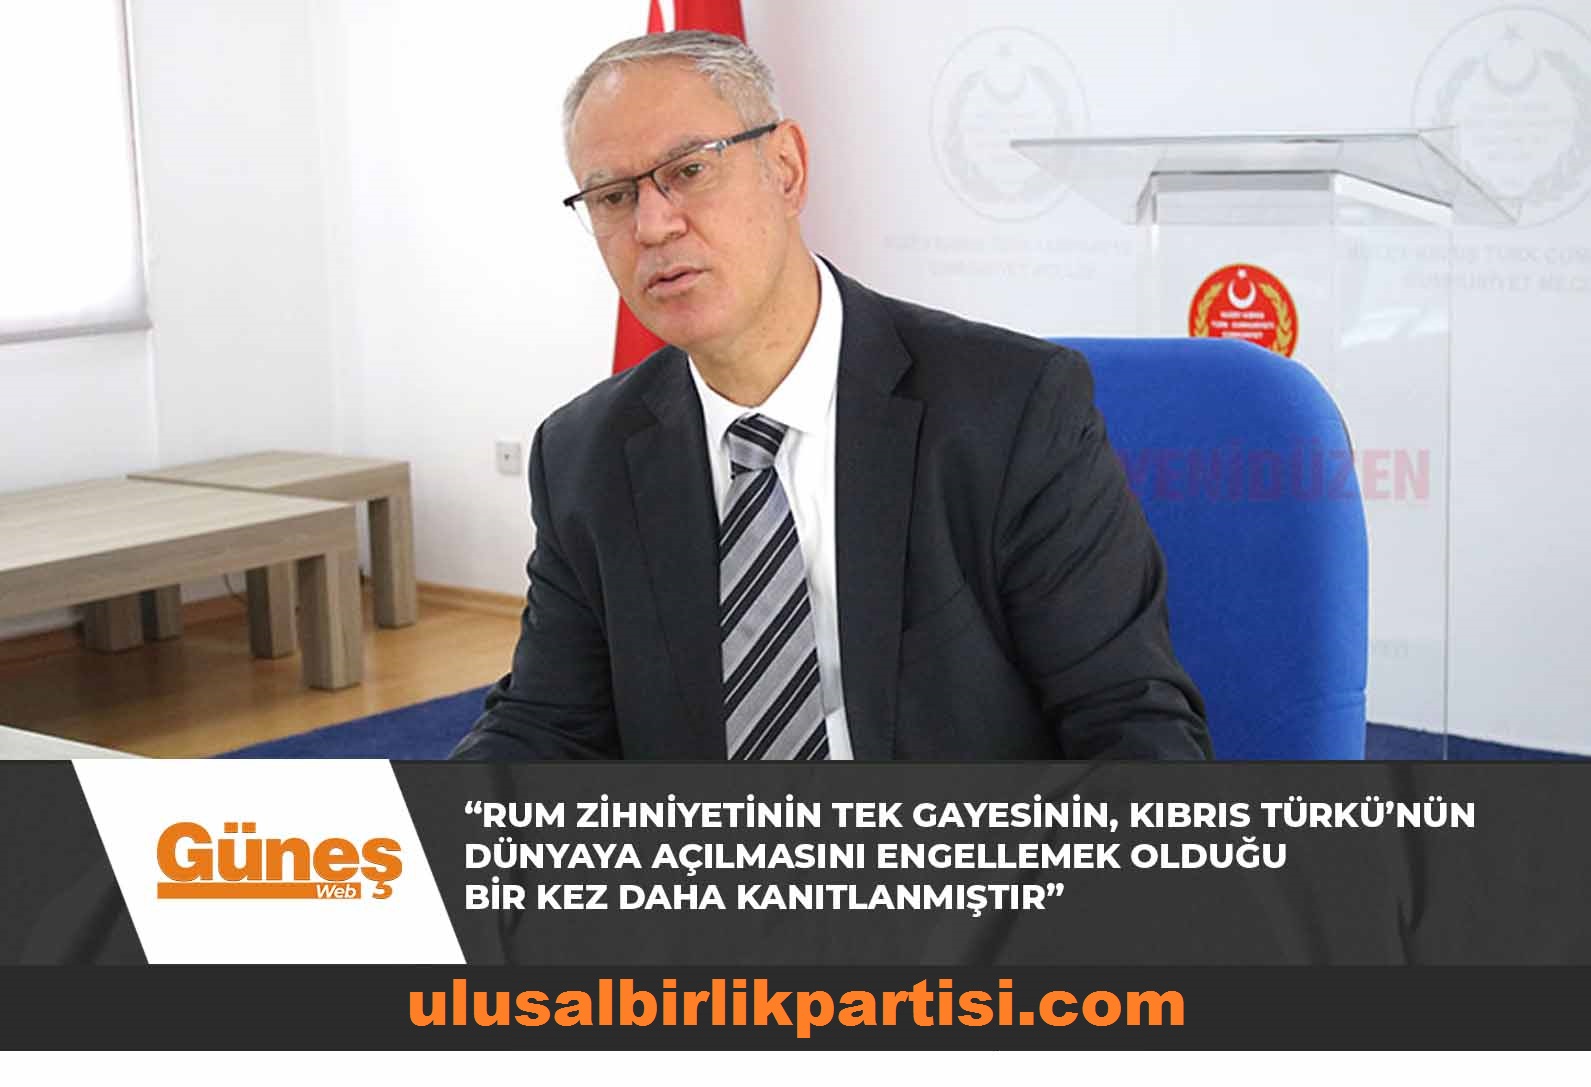 You are currently viewing Hasipoğlu: “Rum zihniyetinin tek gayesinin, Kıbrıs Türkü’nün dünyaya açılmasını engellemek olduğu bir kez daha kanıtlanmıştır”